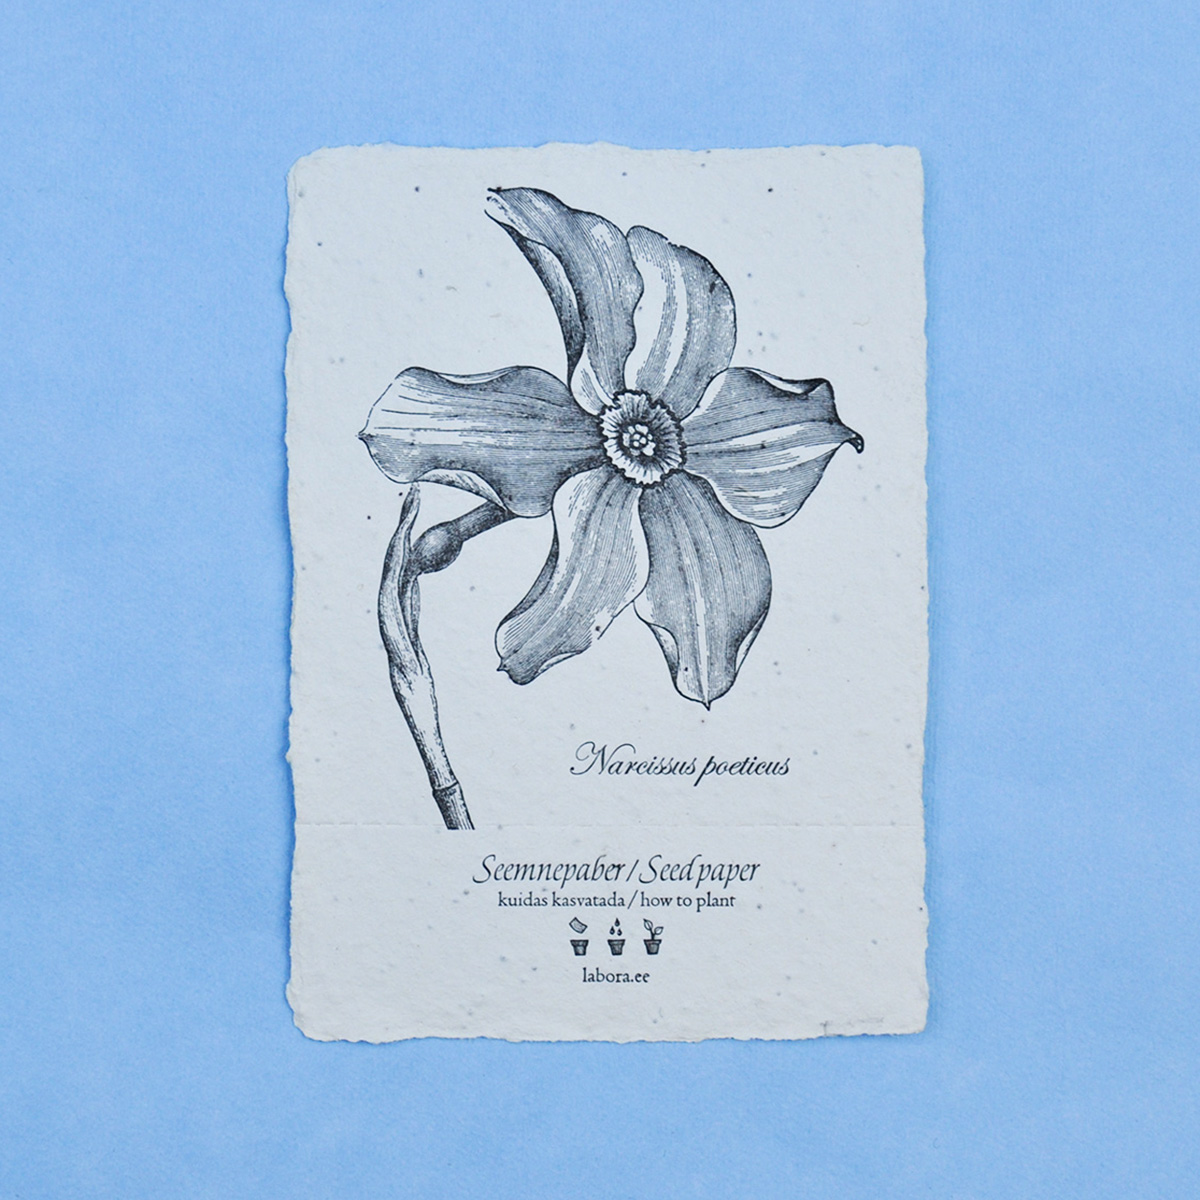 Seemnekaart “Narcissus poeticus”